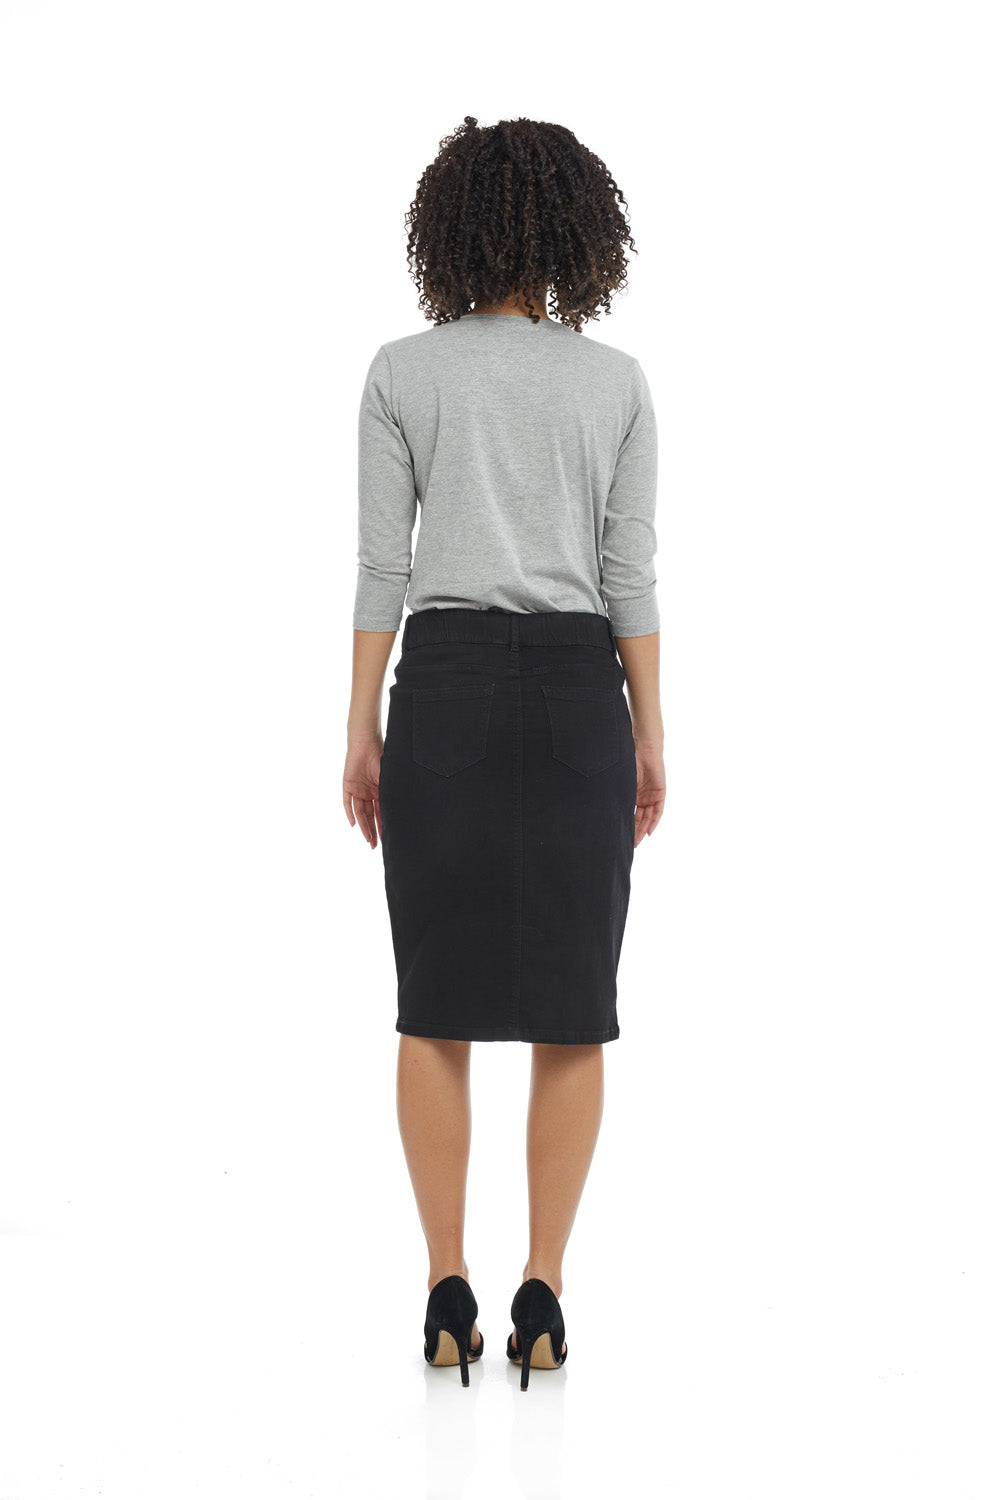 Esteez MANHATTAN Denim Skirt - Straight Knee Length Jean Skirt for WOMEN - BLACK